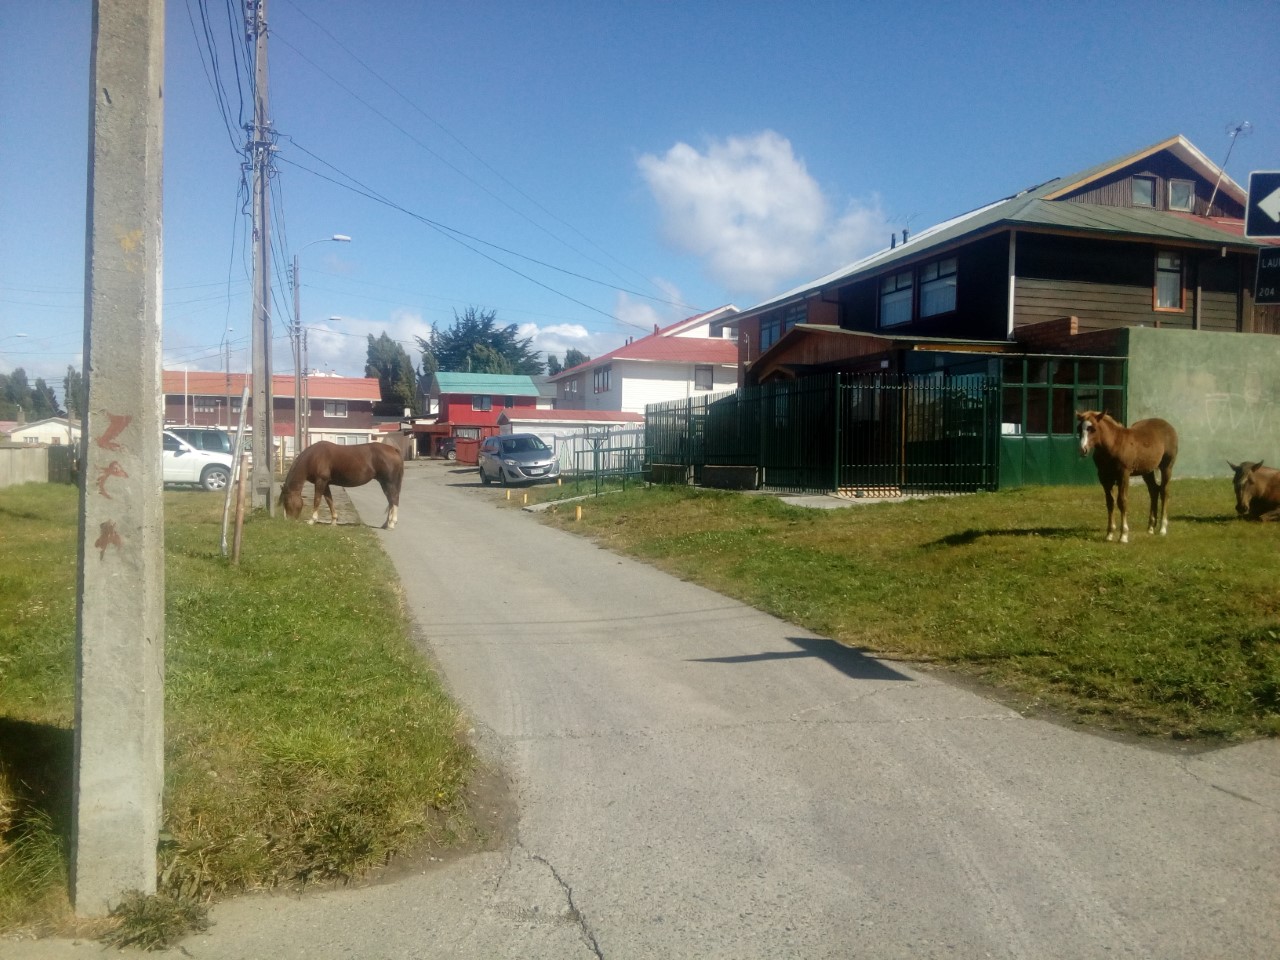 Continúan apareciendo animales sueltos en las calles de Punta Arenas